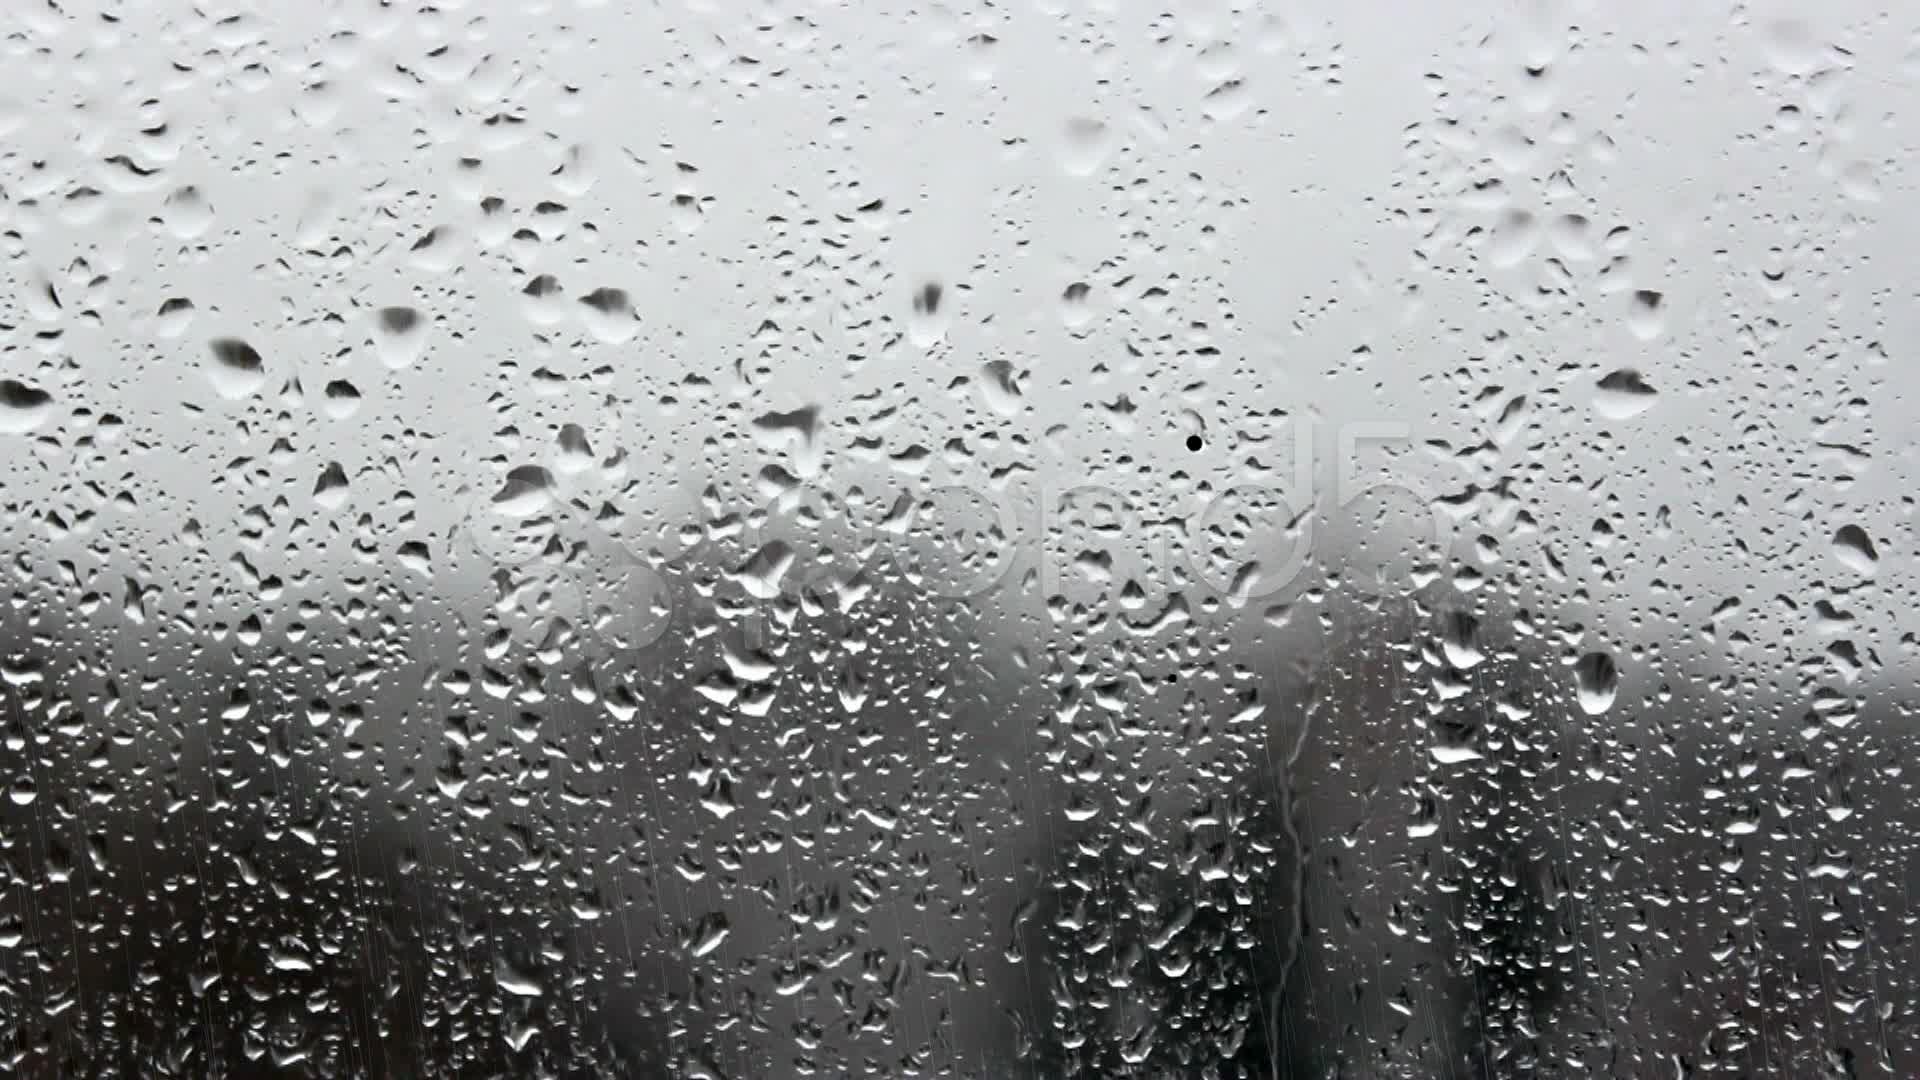 Rain drops in the window pane ~ Stock Video #13870580